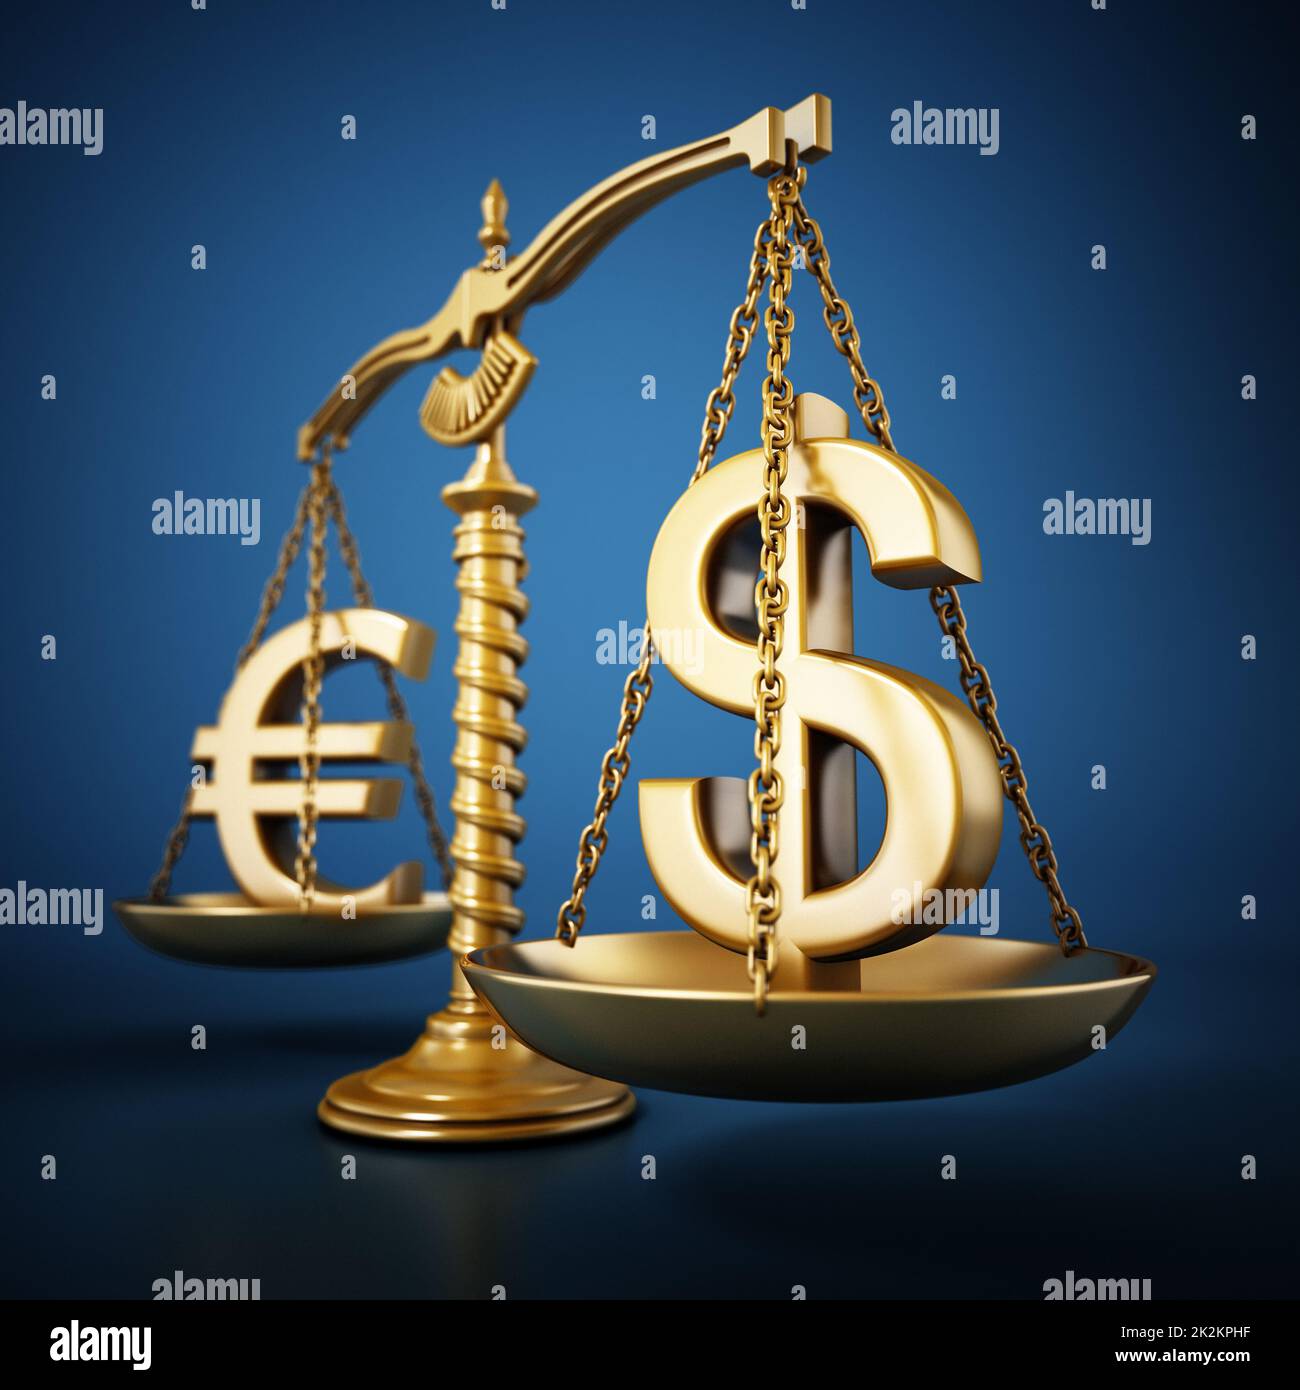 Des signes d'Euro et de Dollar d'or se tenant sur une balance équilibrée. 3D illustration Banque D'Images